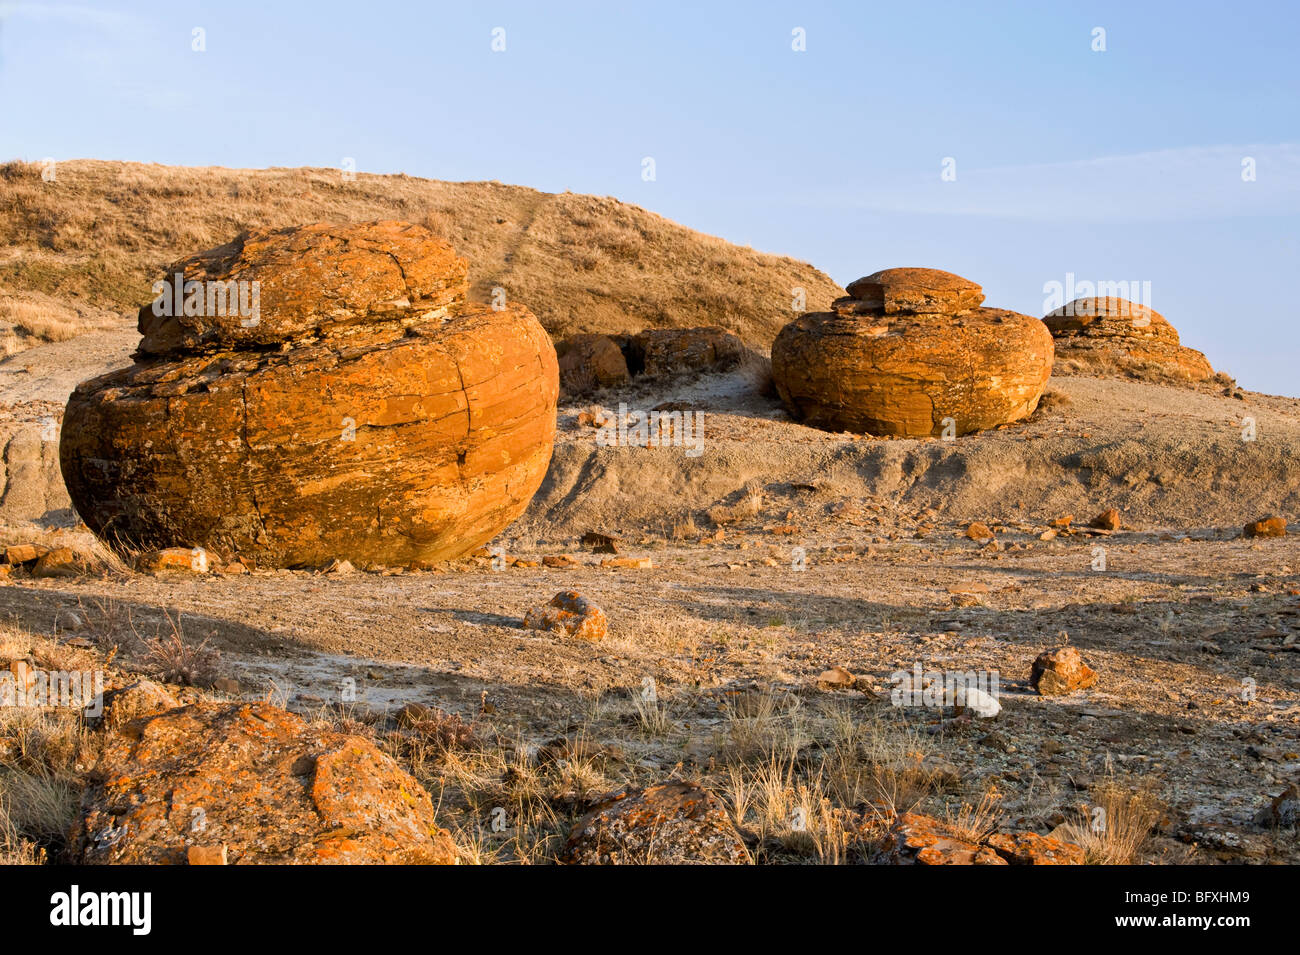 Exponierten Konkretion Felsbrocken in erodierten Semi ariden Umgebung des Red Rock Coulee, in der Nähe von sieben Personen, Alberta, Kanada Stockfoto